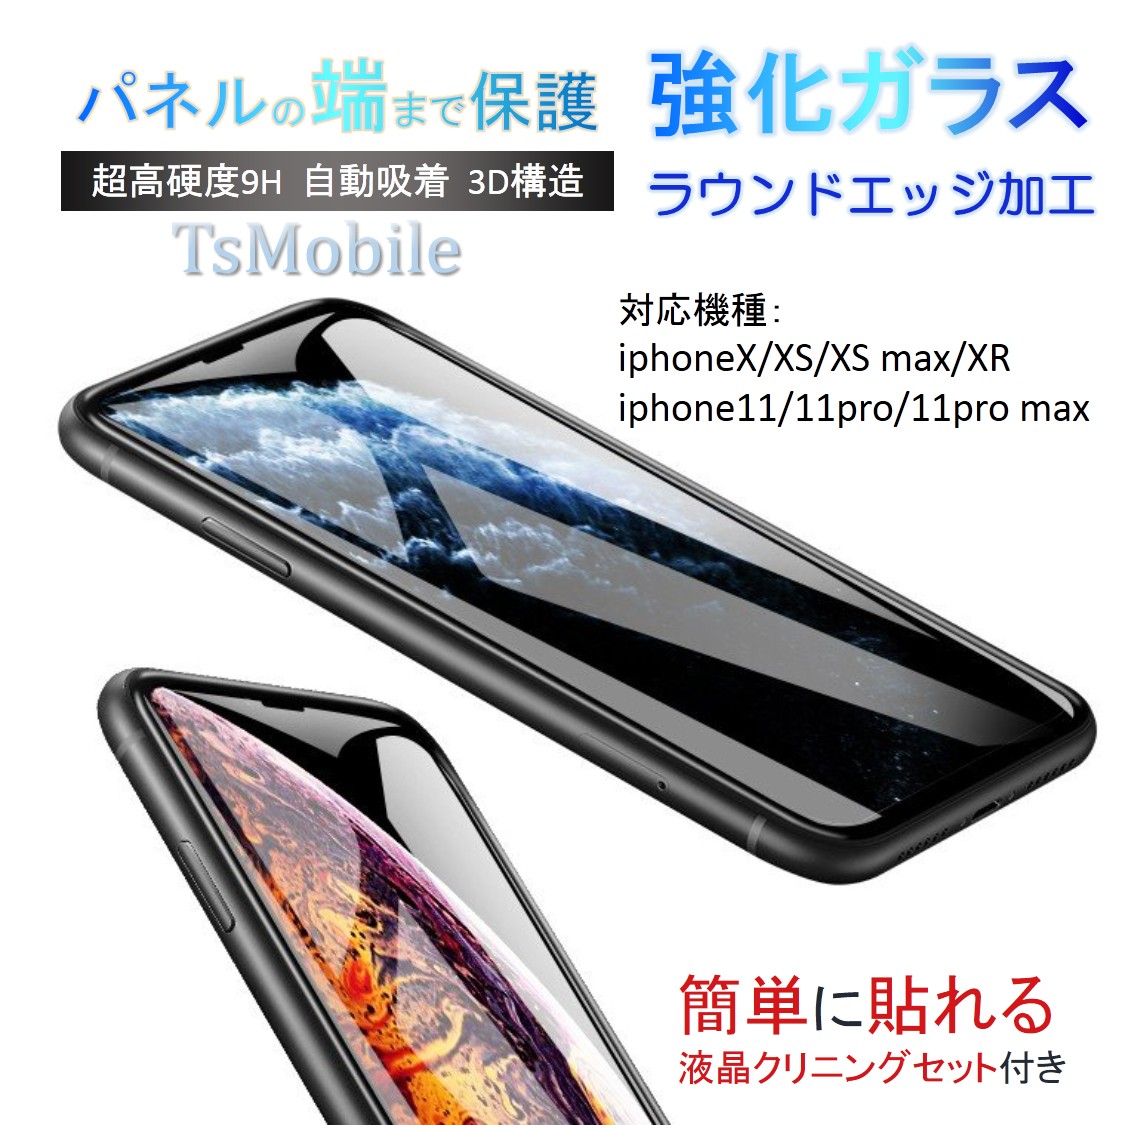 iPhone11ガラスフィルム iPhone11 Pro/11 Pro Max 全面保護フィルム iPhone X/XR/XS保護フィルム 強化ガラス